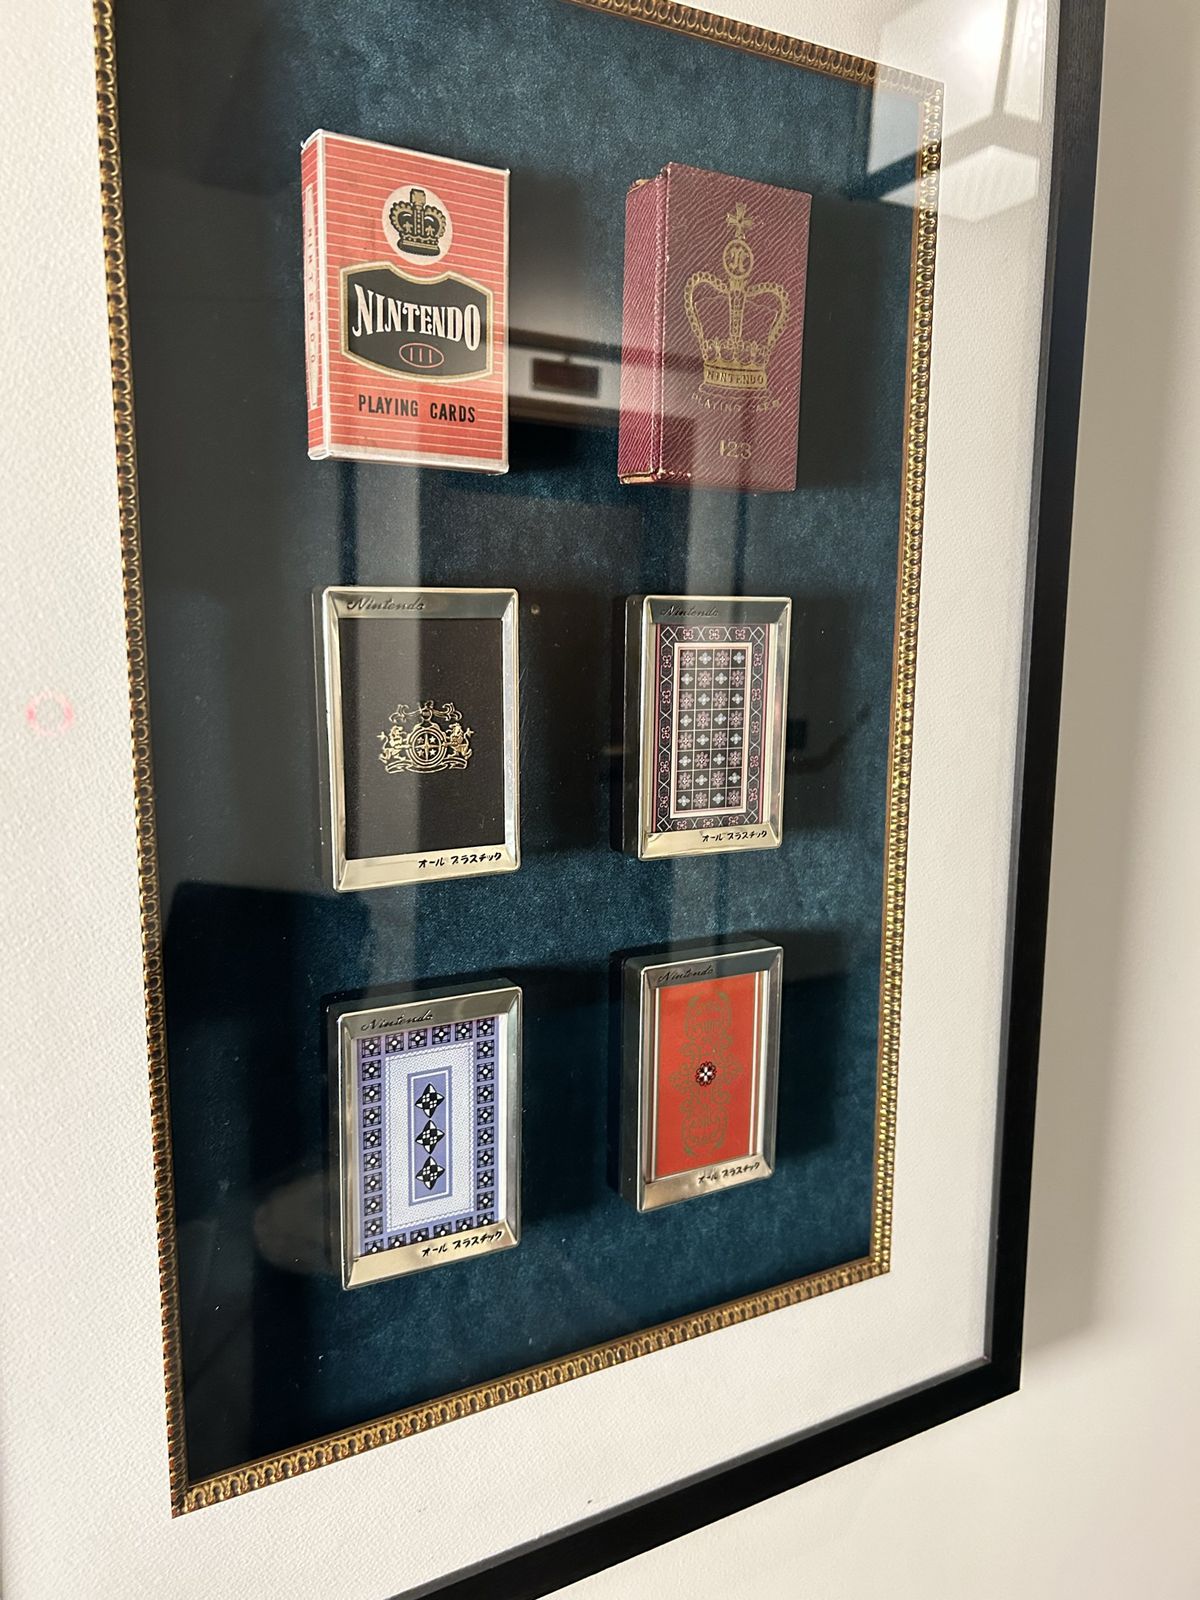 Kolekcja starych kart do gry z czasów Nintendo jako firmy produkującej karty, wystawiona pod szkłem w Marufukuro w Kioto